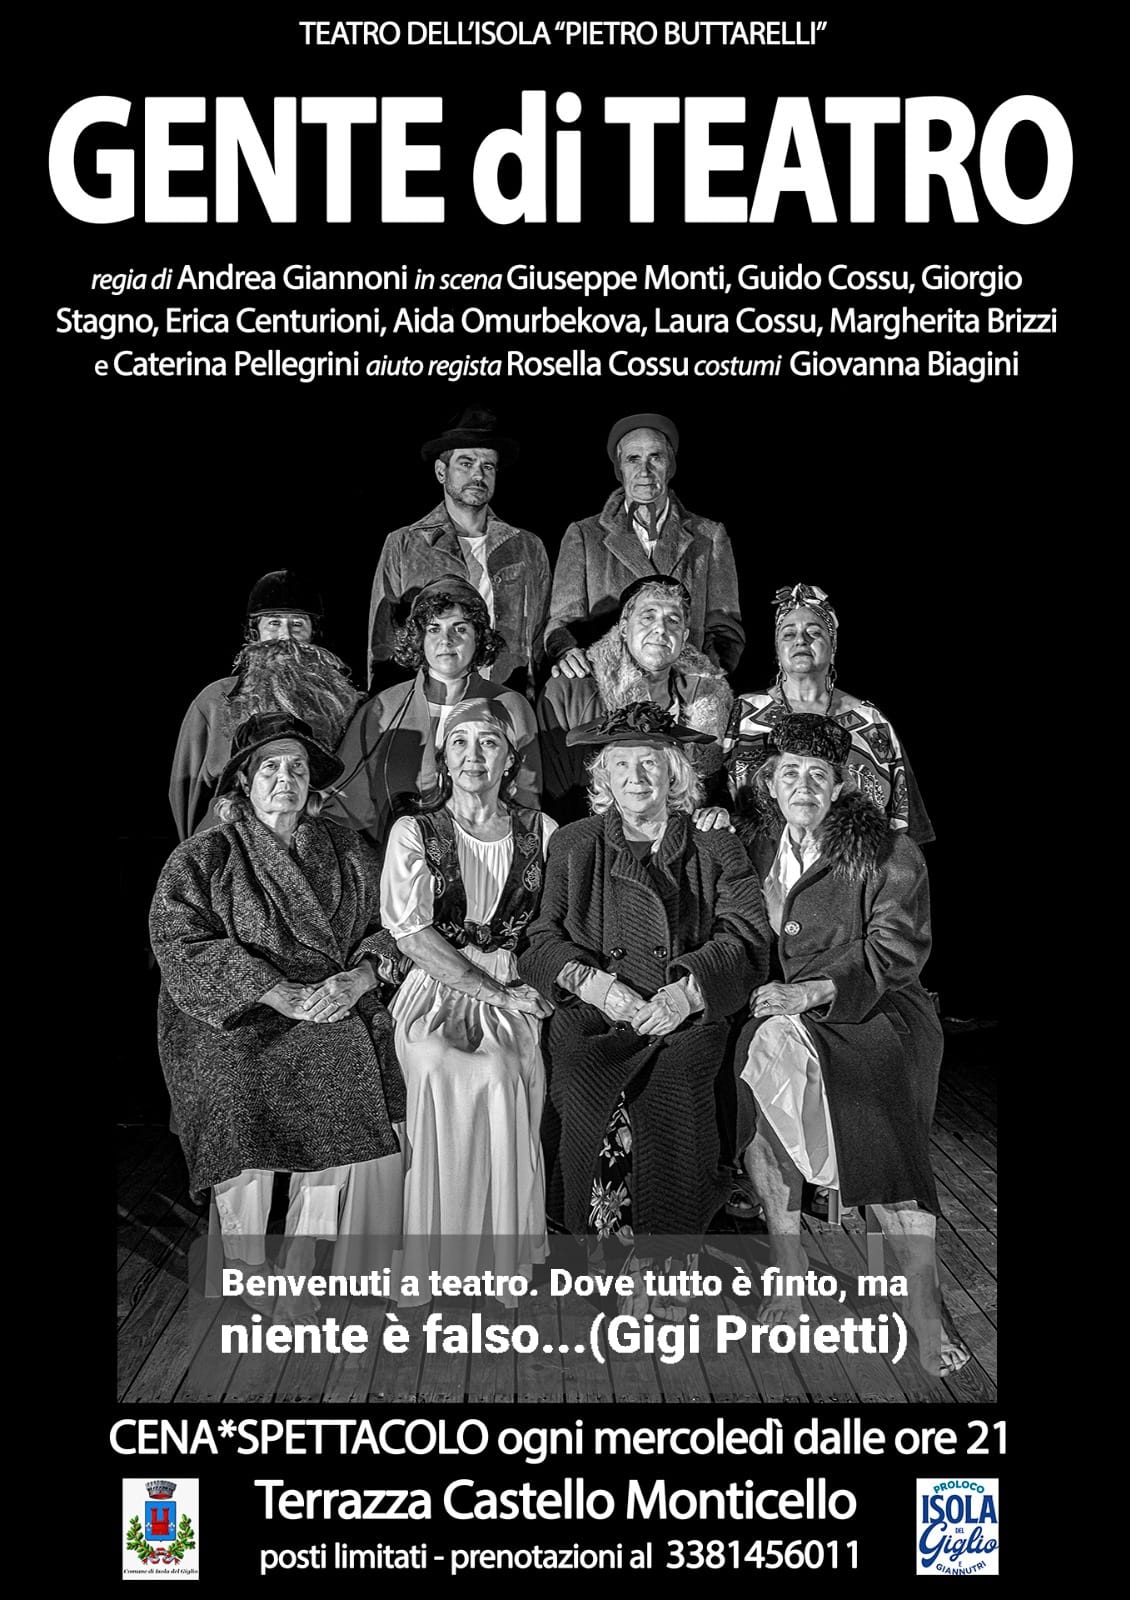 Locandina spettacolo teatrale Gente di Teatro del Teatro dell'Isola del Giglio